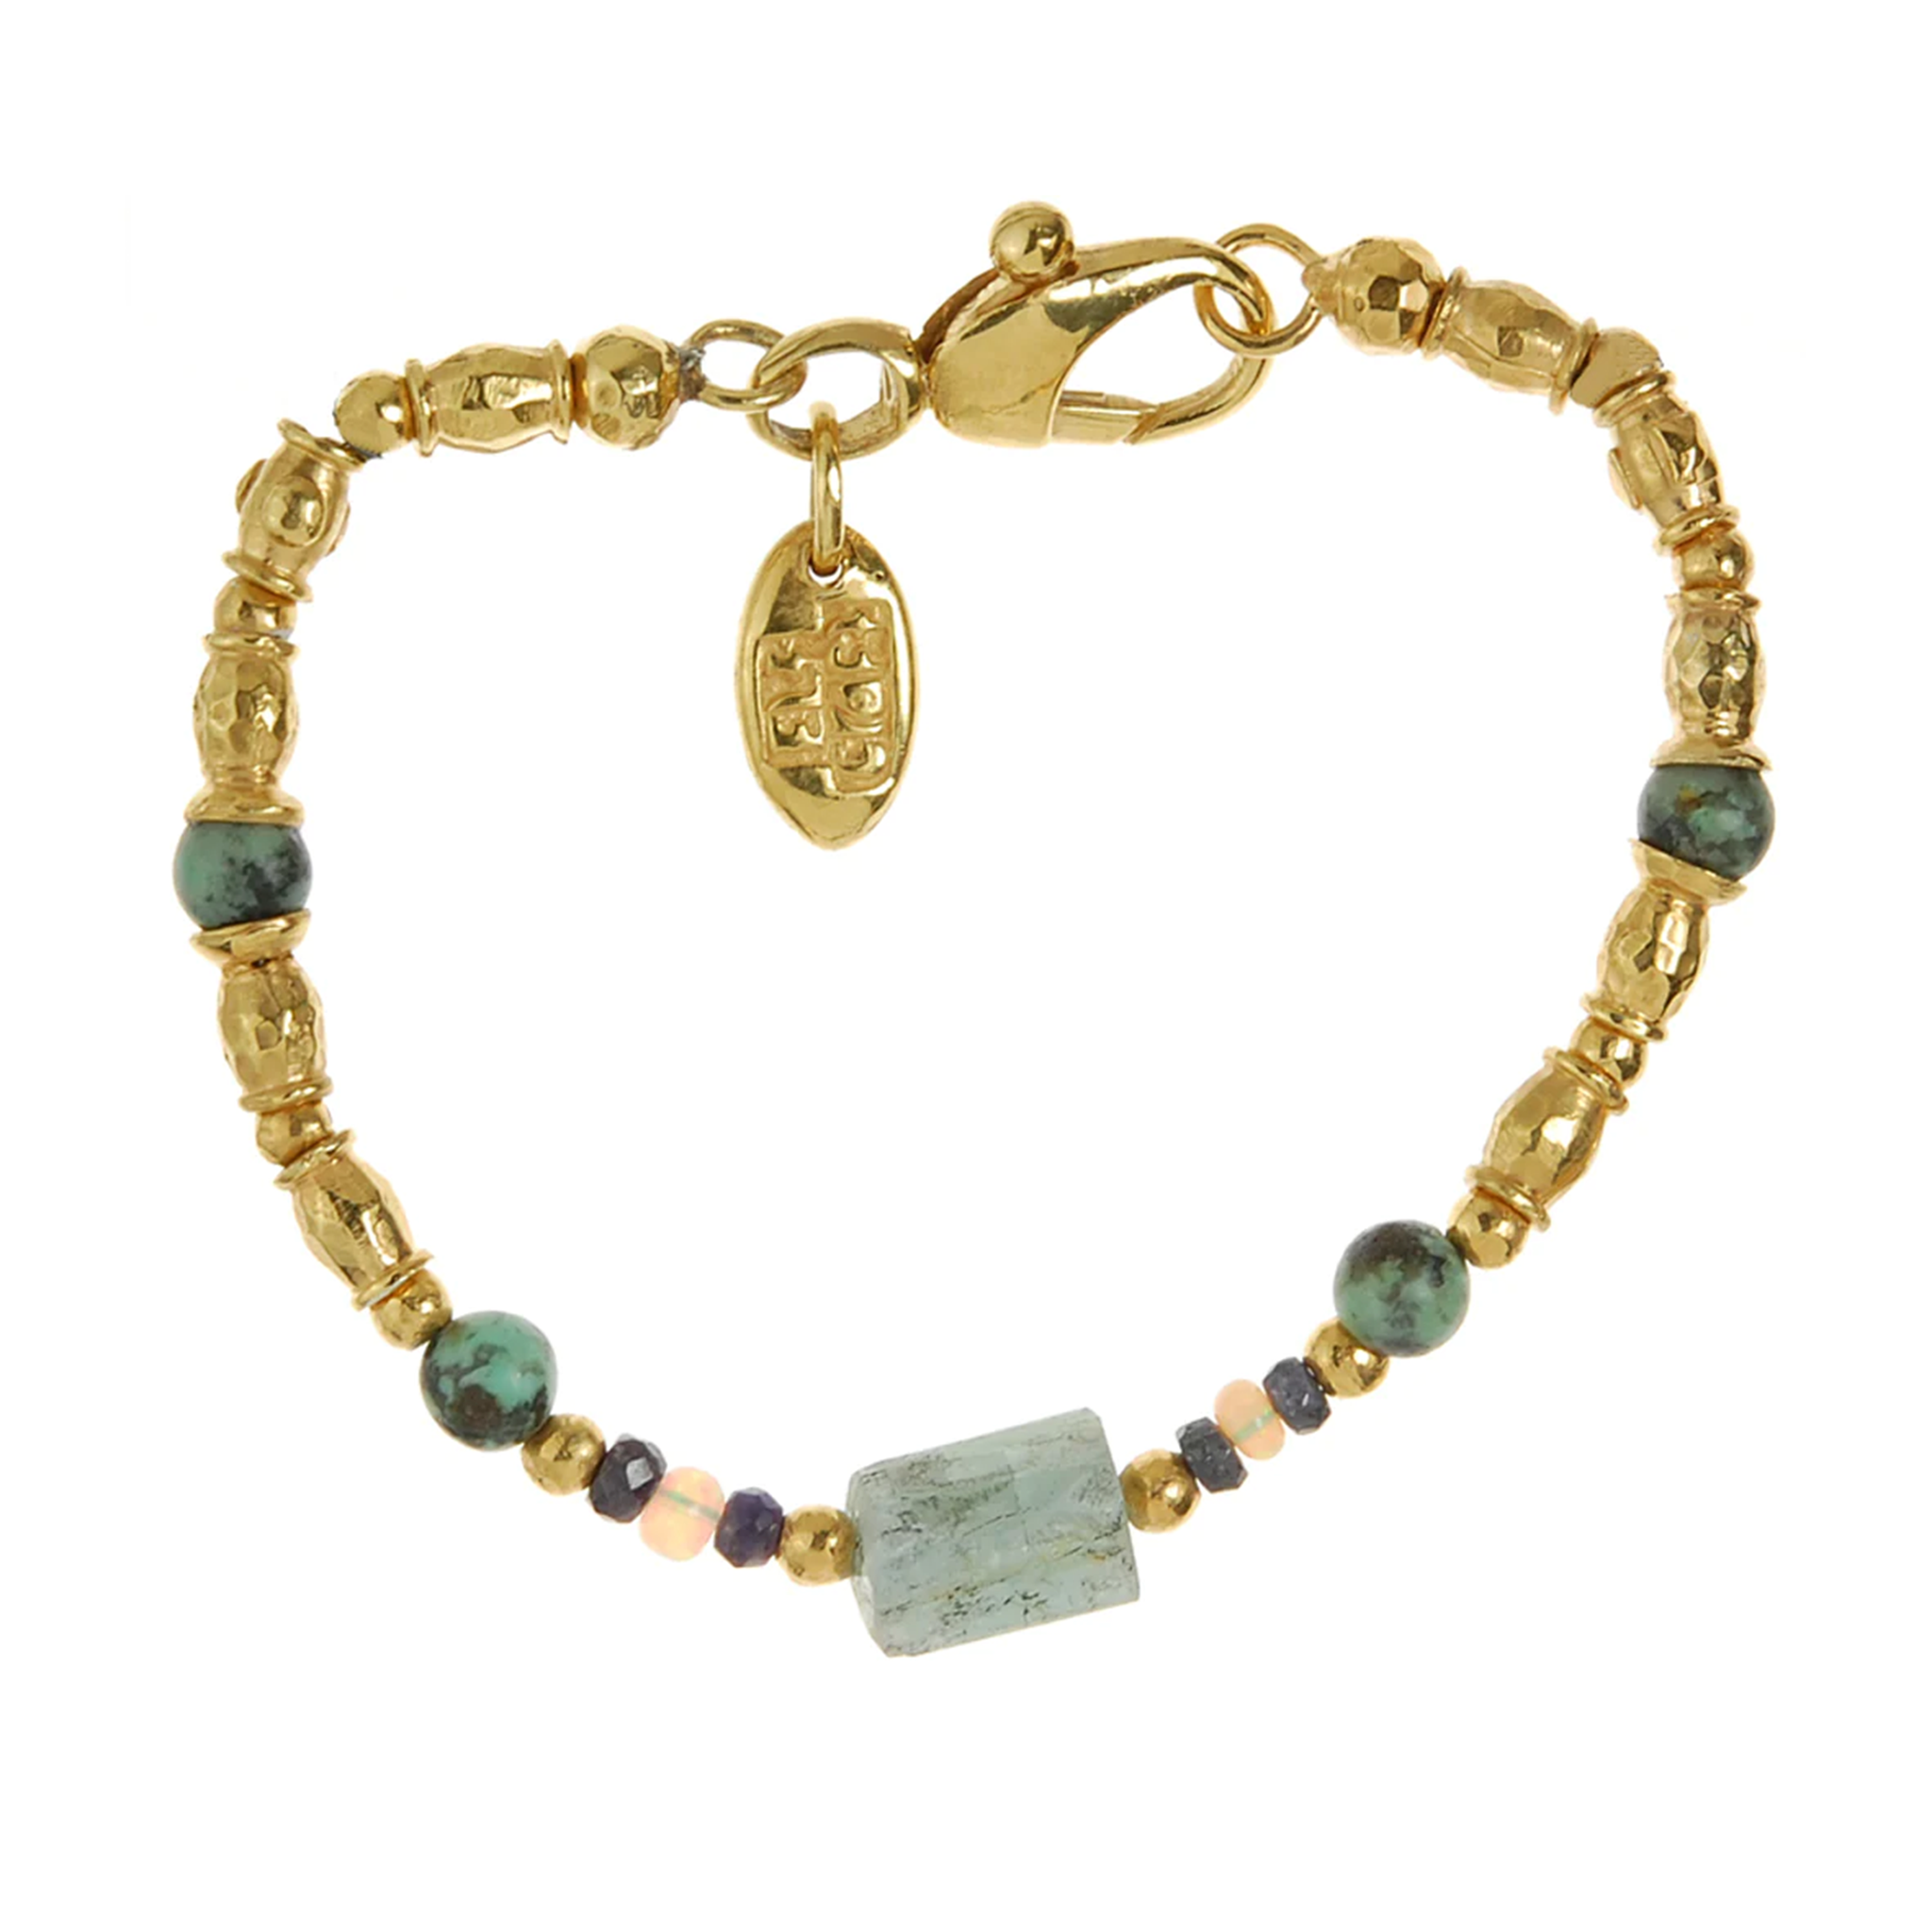 Vergoldetes Armband mit facettierten Designelementen, sowie Exquisite Peridot, Aquamarin, Opal, und Afrikanischem Türkis